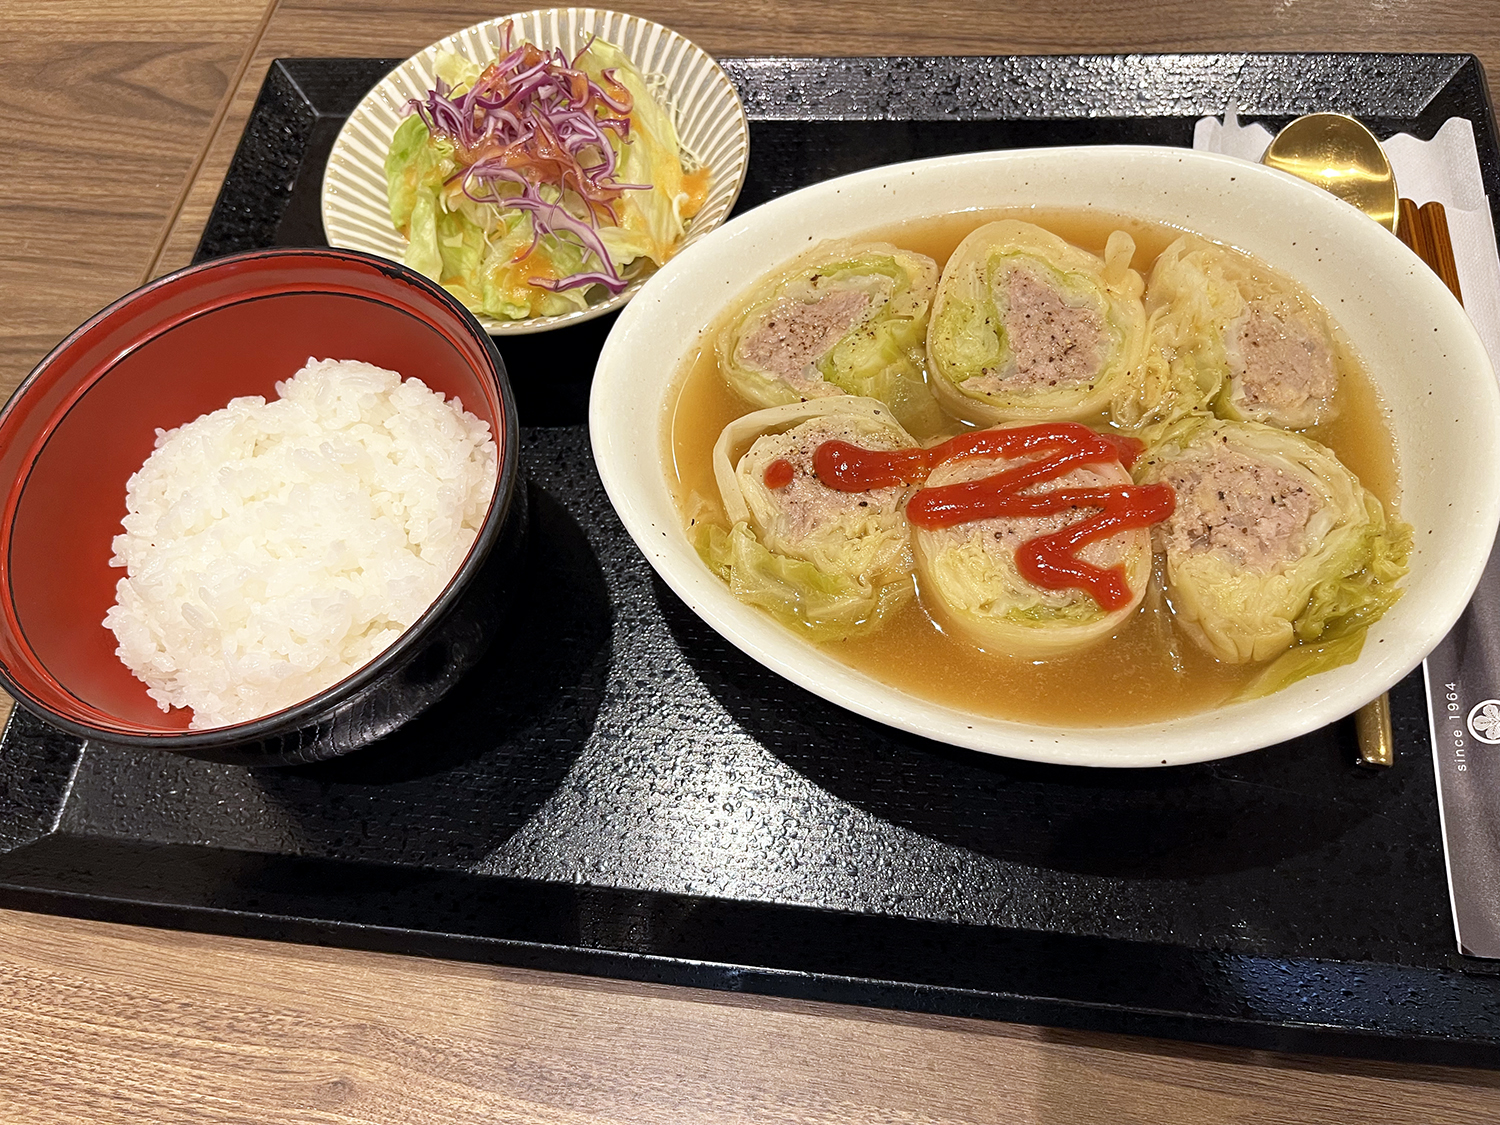 スプーンとお箸で食べるロールキャベツ1100円。